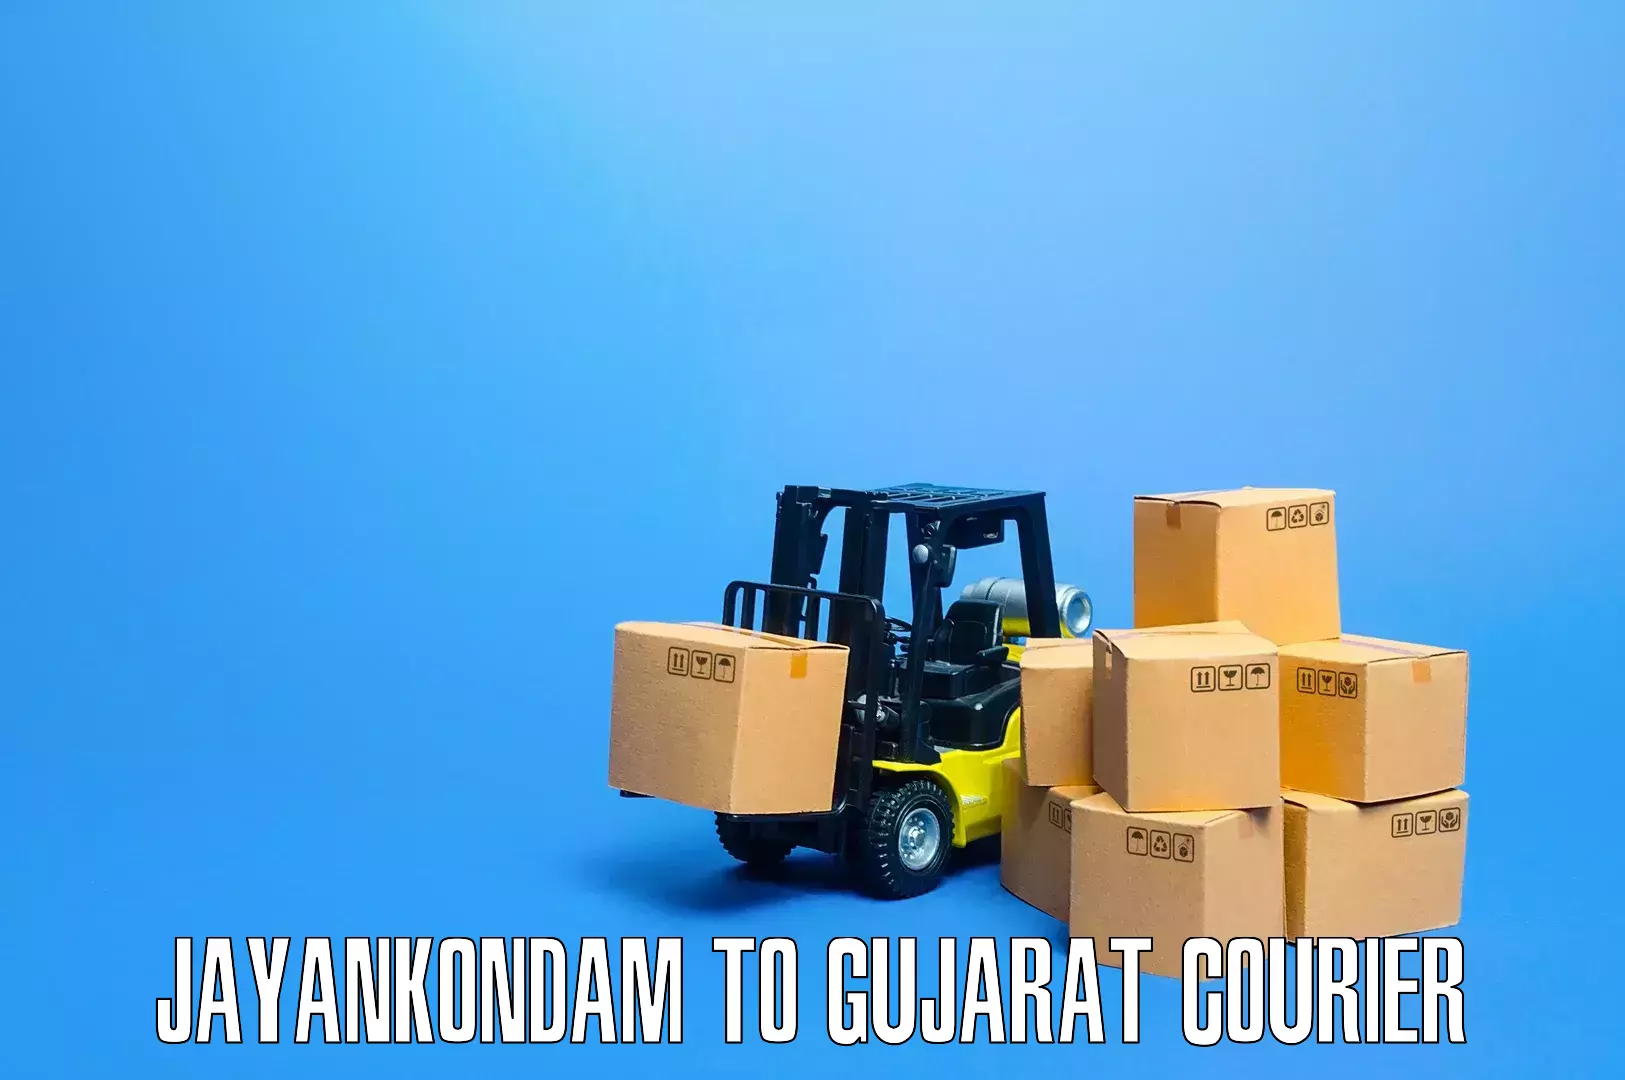 Premium furniture transport Jayankondam to Gujarat